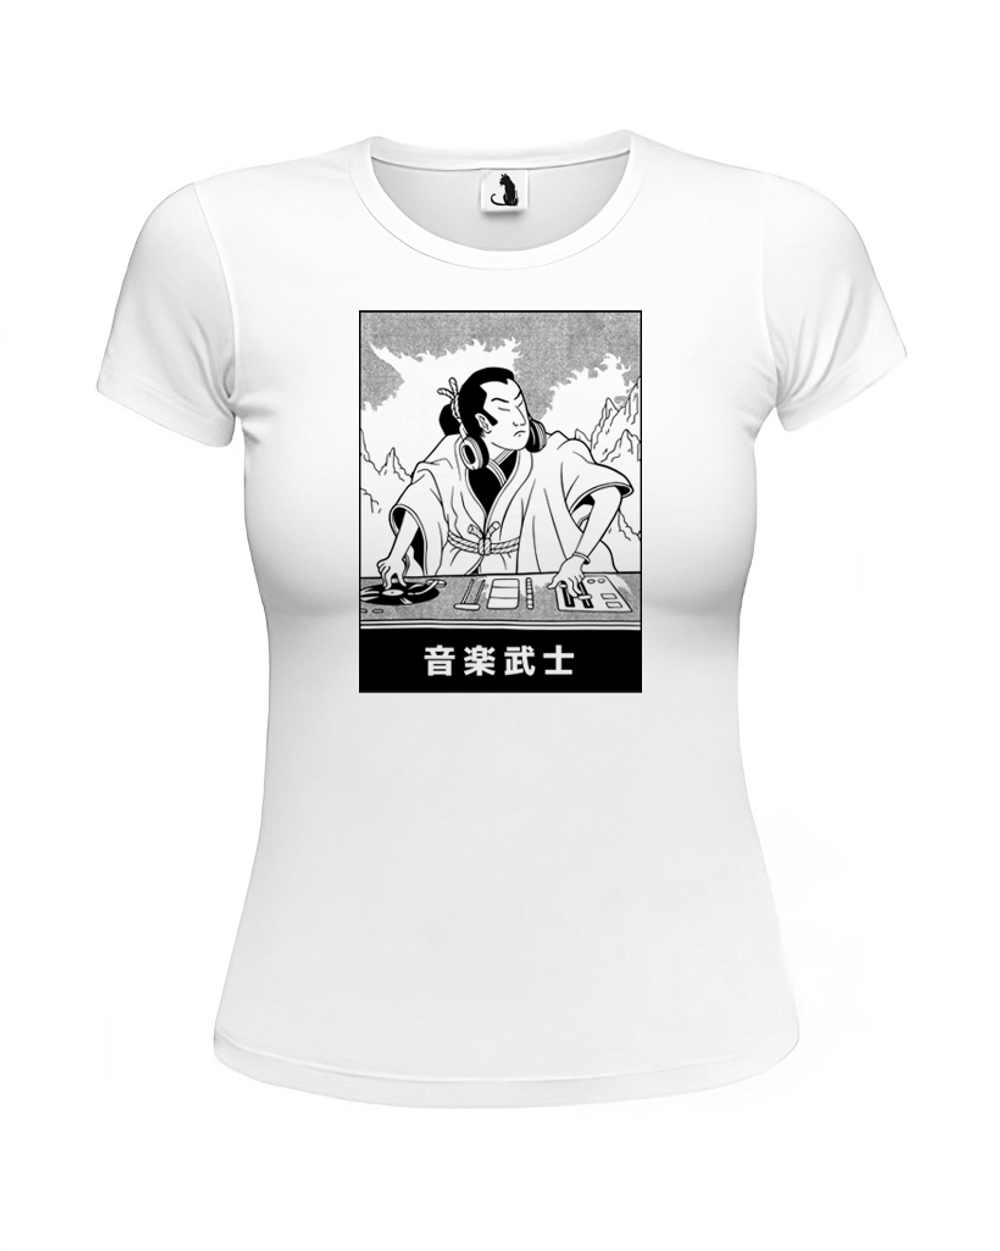 Футболка Диджей-самурай женская приталенная белая с черным рисунком